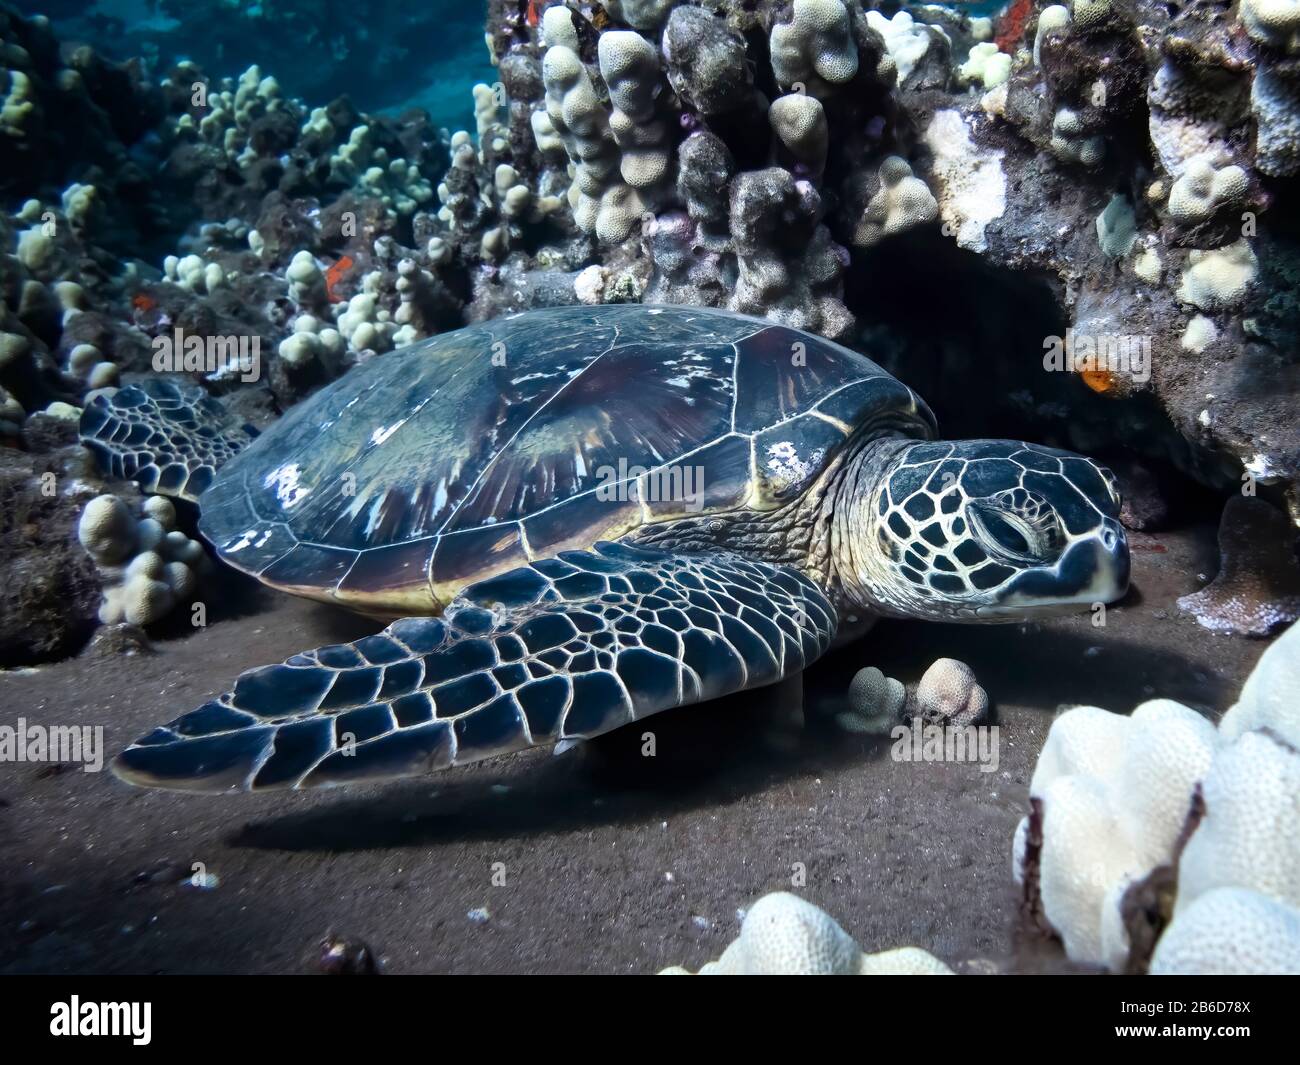 Tortuga marina verde hawaiana descansando en arrecife de coral a imagen subacuática. Foto de stock